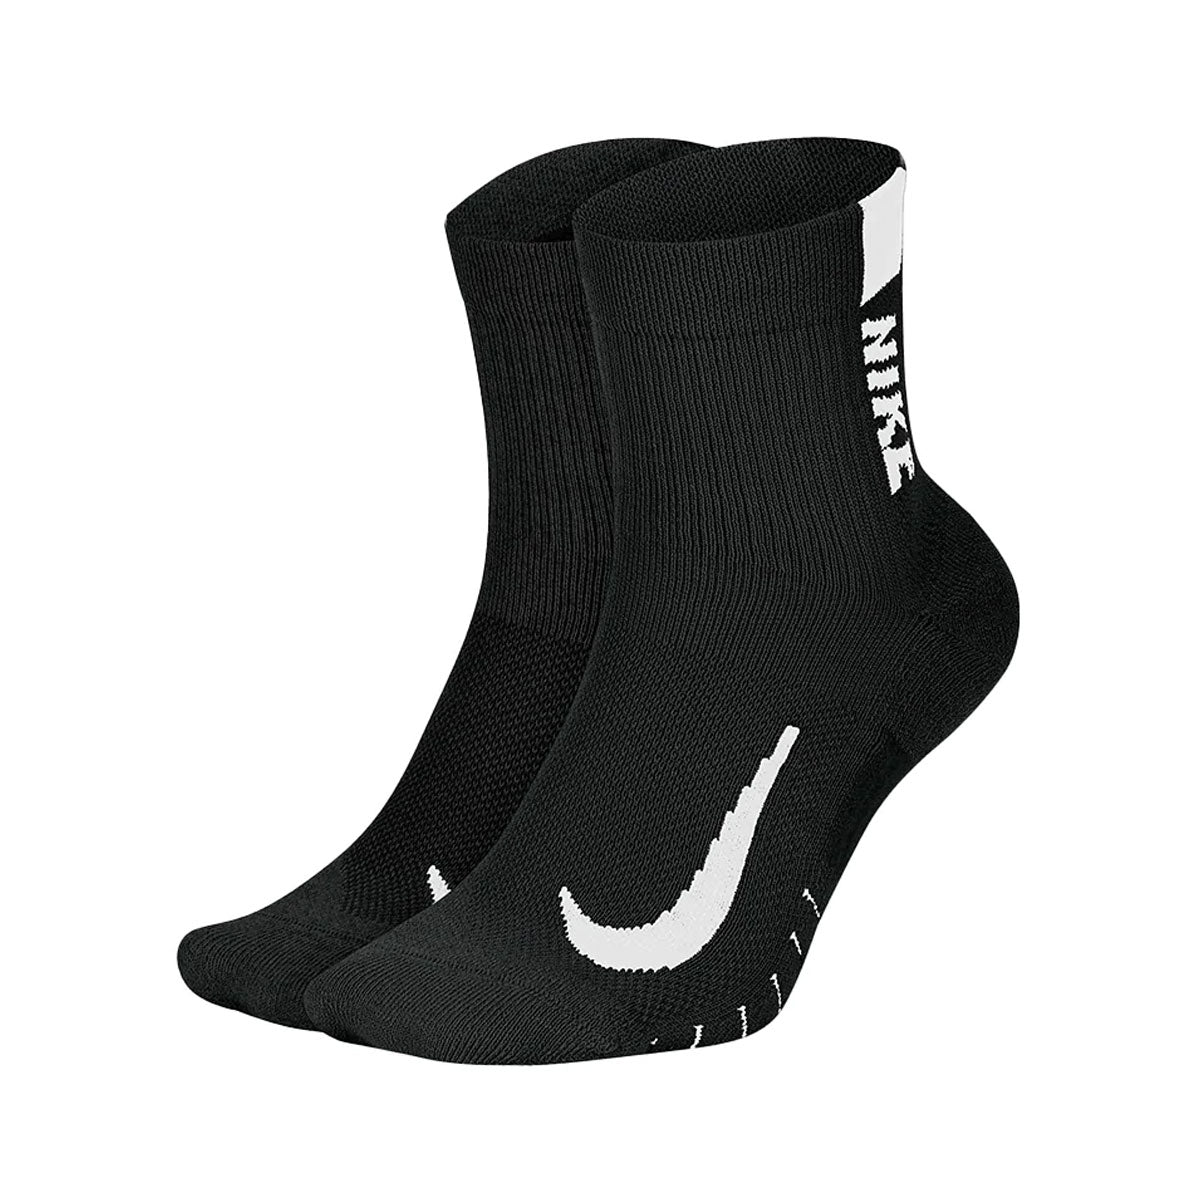 Nike Men's Running Ankle Socks (2 Pair)